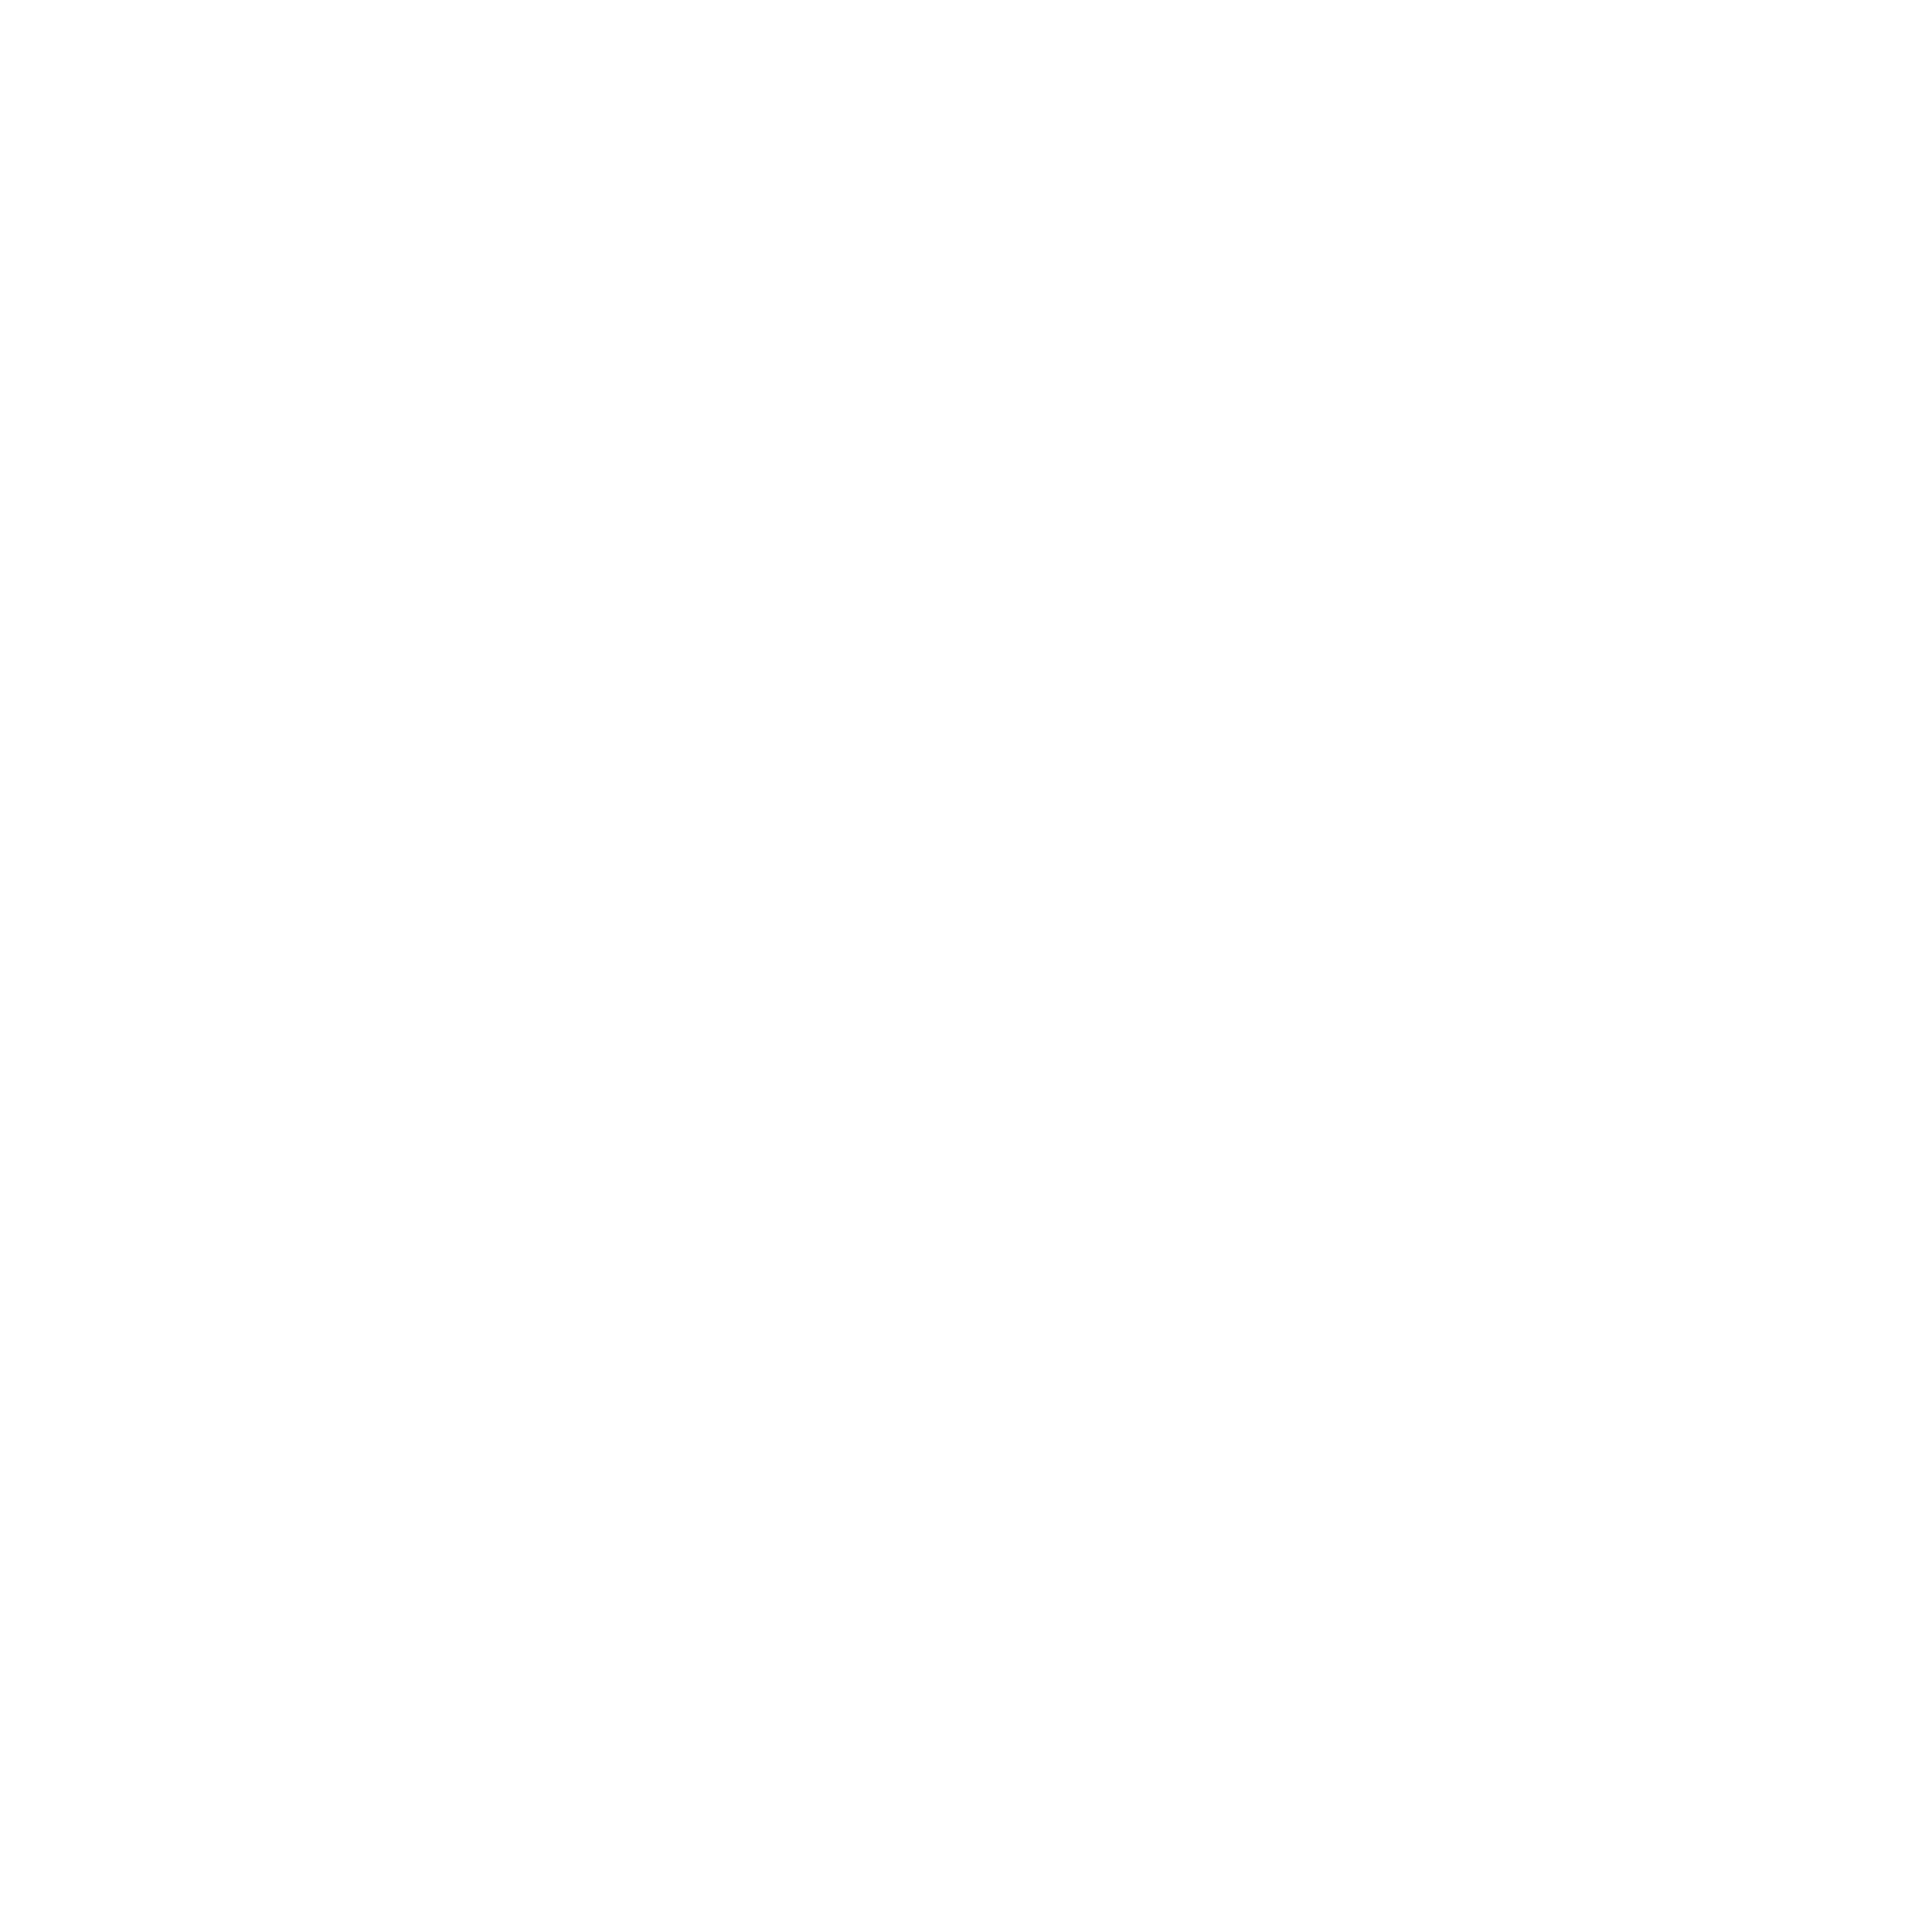 Garmin | Crunchbase